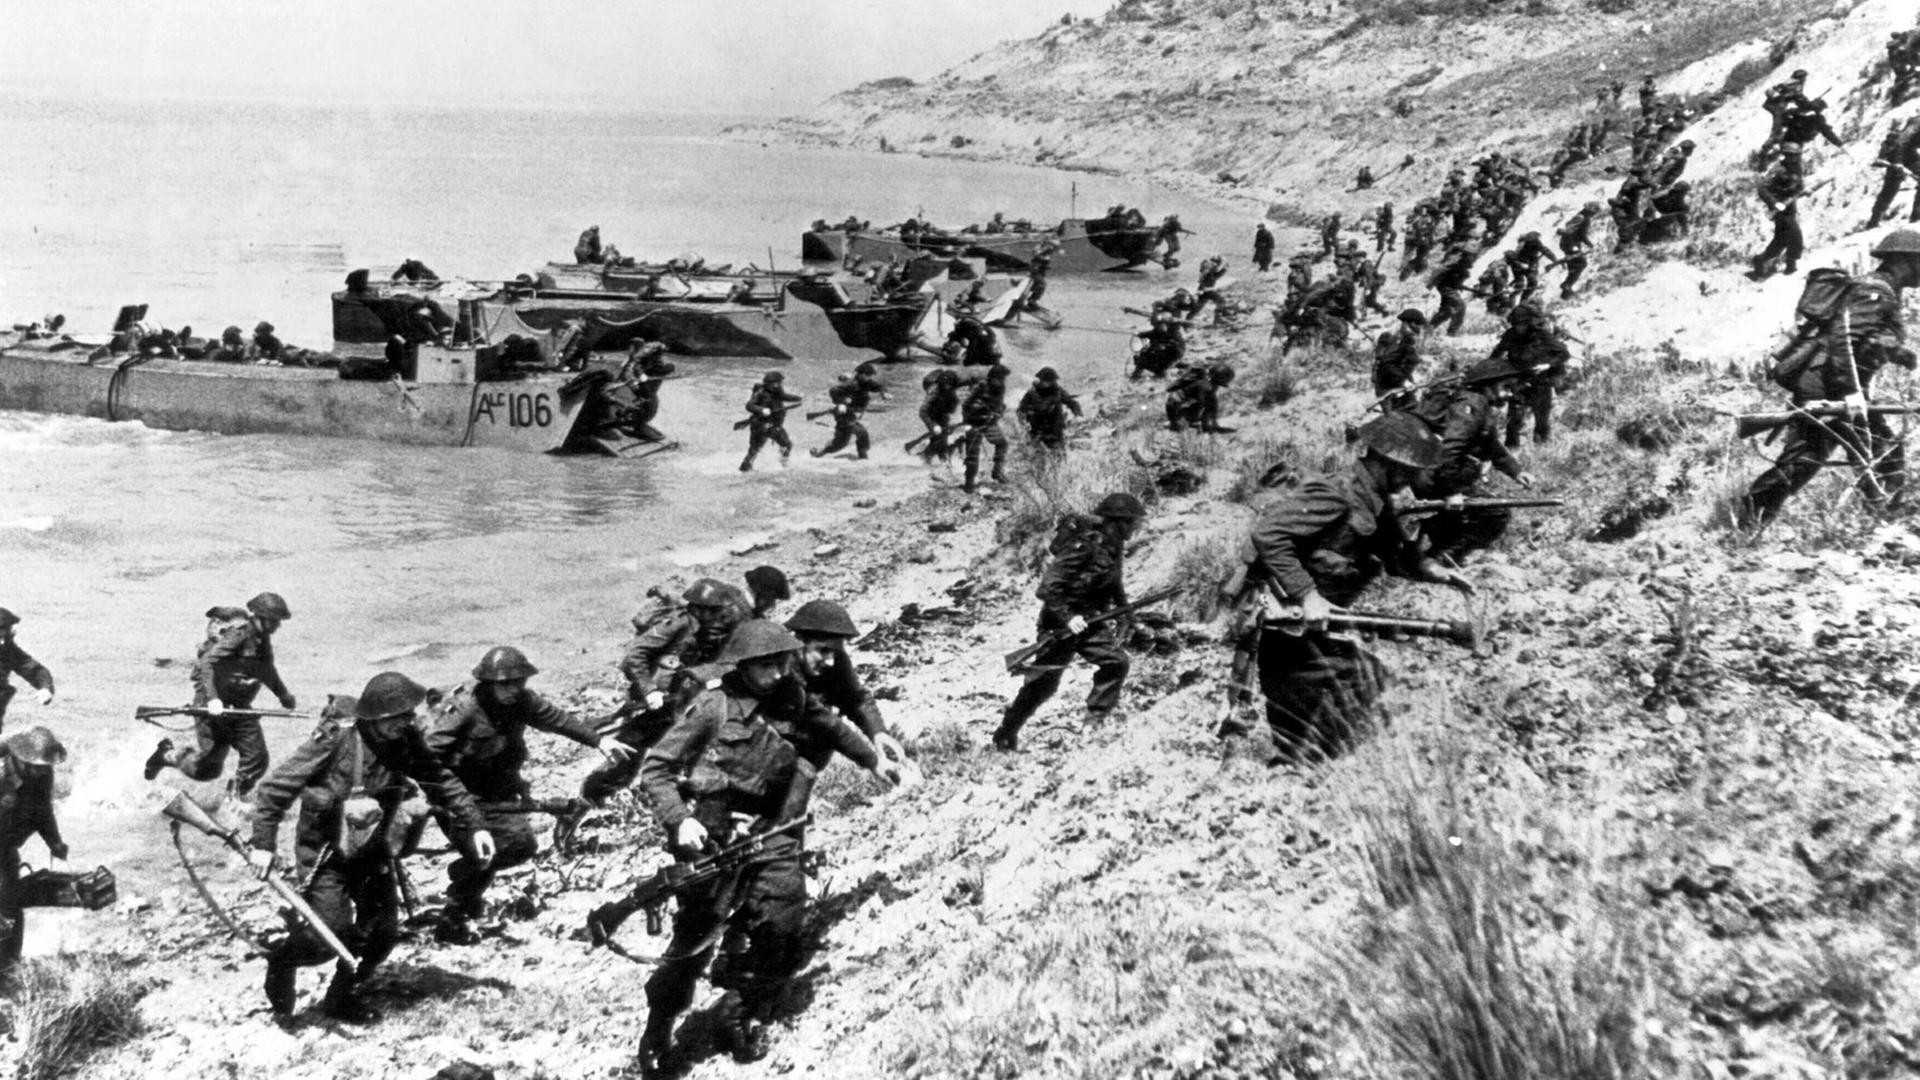 Britische Truppen üben in Slapton Sands für den D-Day, die Landung in der Normandie. Durch Kommunikationsfehler bei den Alliierten starben während des Manövers 946 US-Soldaten, die meisten bei einem Angriff deutscher Schnellboote, die die ungeschützten Landungsboote torpedierten.